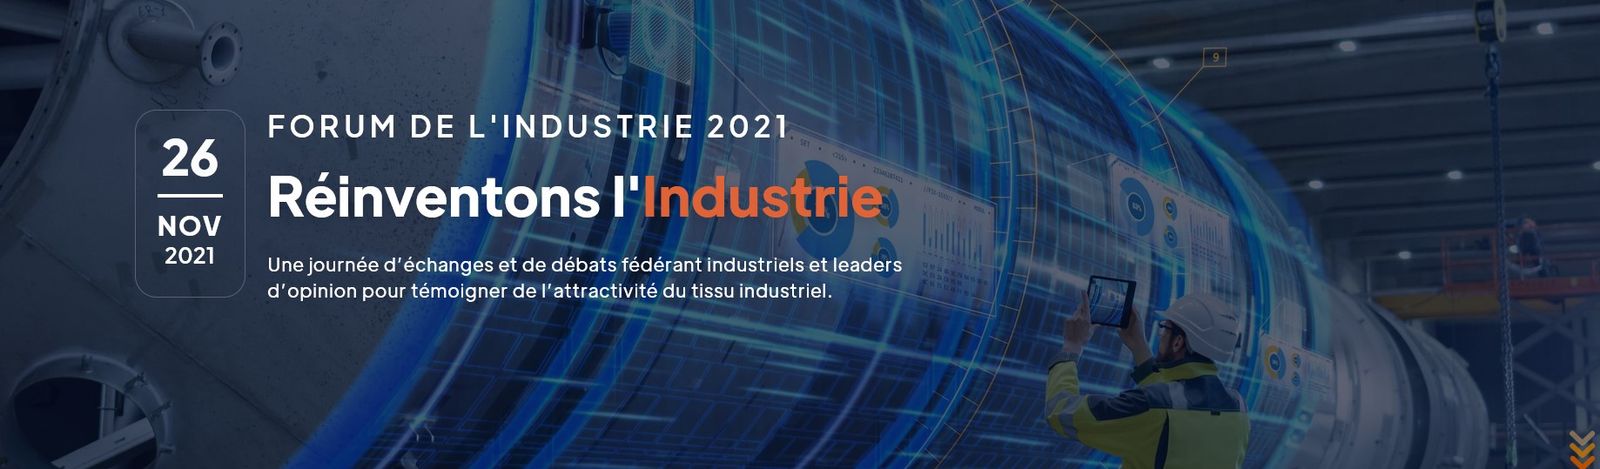 Forum de l’Industrie 2021 – Participation à des ateliers de FORINDUSTRIE